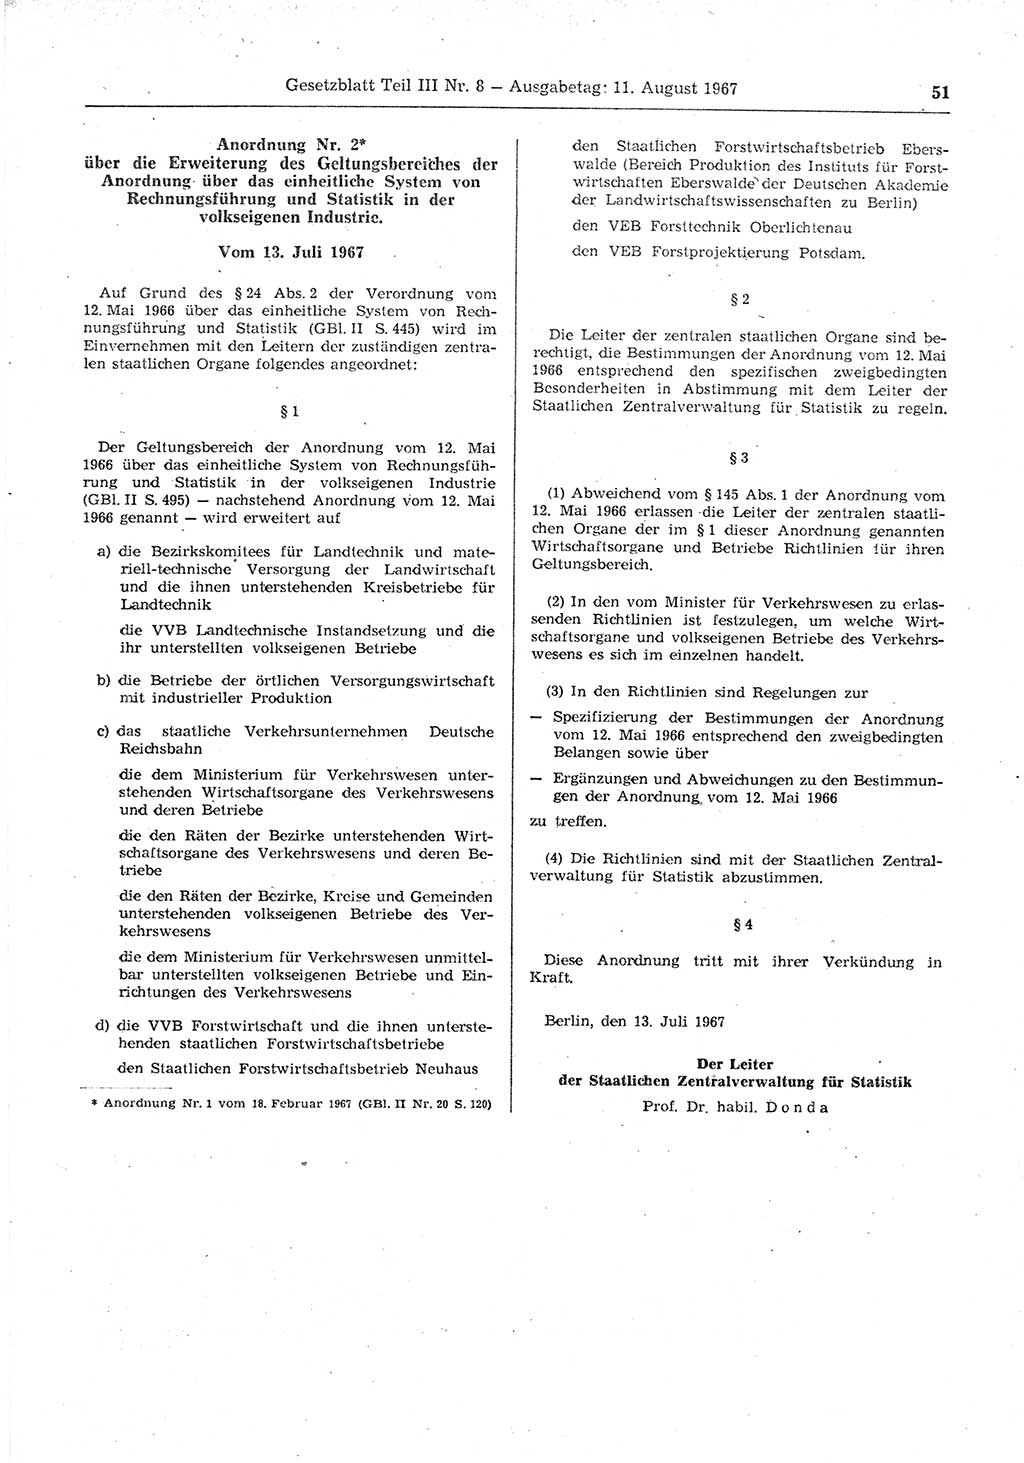 Gesetzblatt (GBl.) der Deutschen Demokratischen Republik (DDR) Teil ⅠⅠⅠ 1967, Seite 51 (GBl. DDR ⅠⅠⅠ 1967, S. 51)